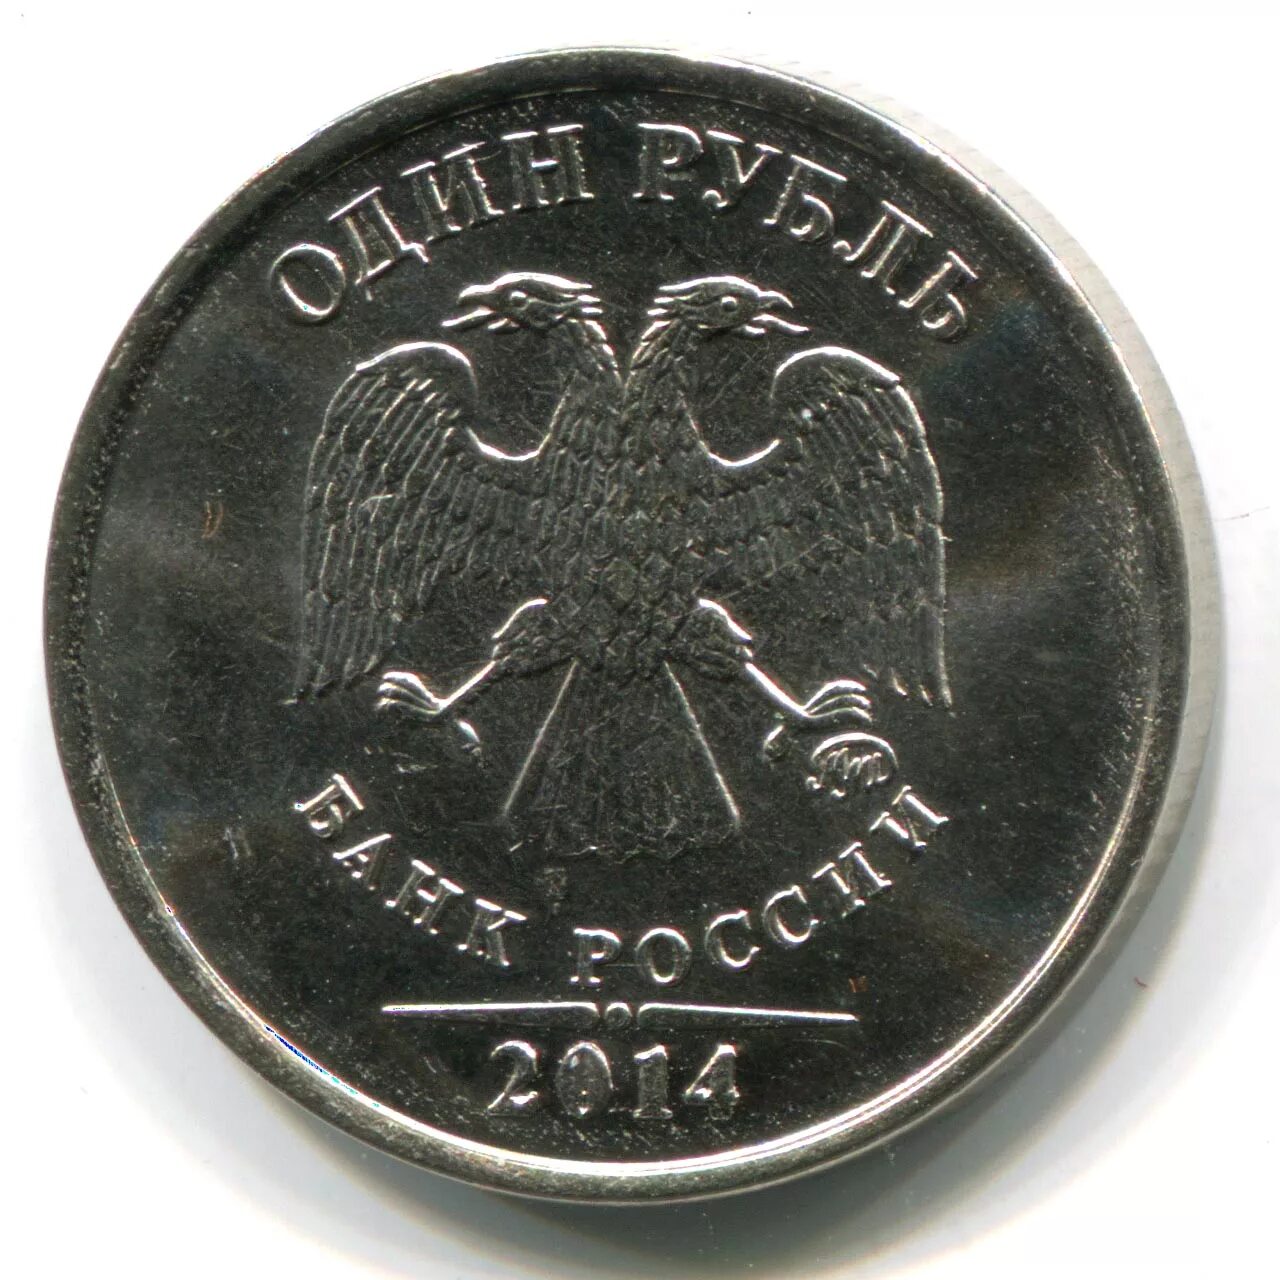 Цена монет банк россии. 1 Рубль 2005 ММД. 1 Рубль 2008 ММД немагнитная. 1 Рубль 2009 ММД (магнитный). Монета 5 рублей Аверс.